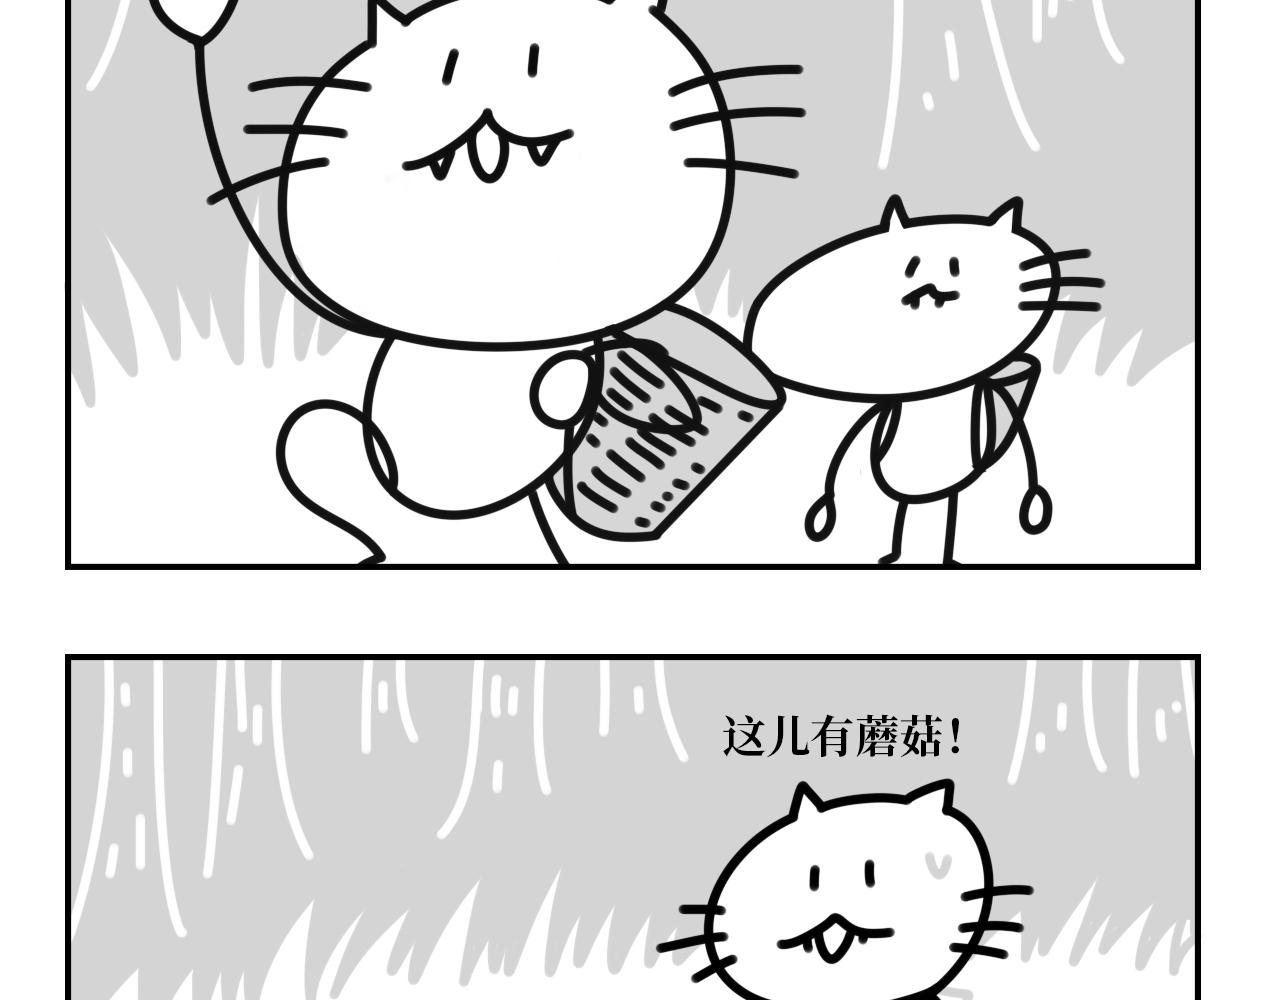 長臉貓和小貓崽子 - 10.採蘑菇的小貓咪 - 6